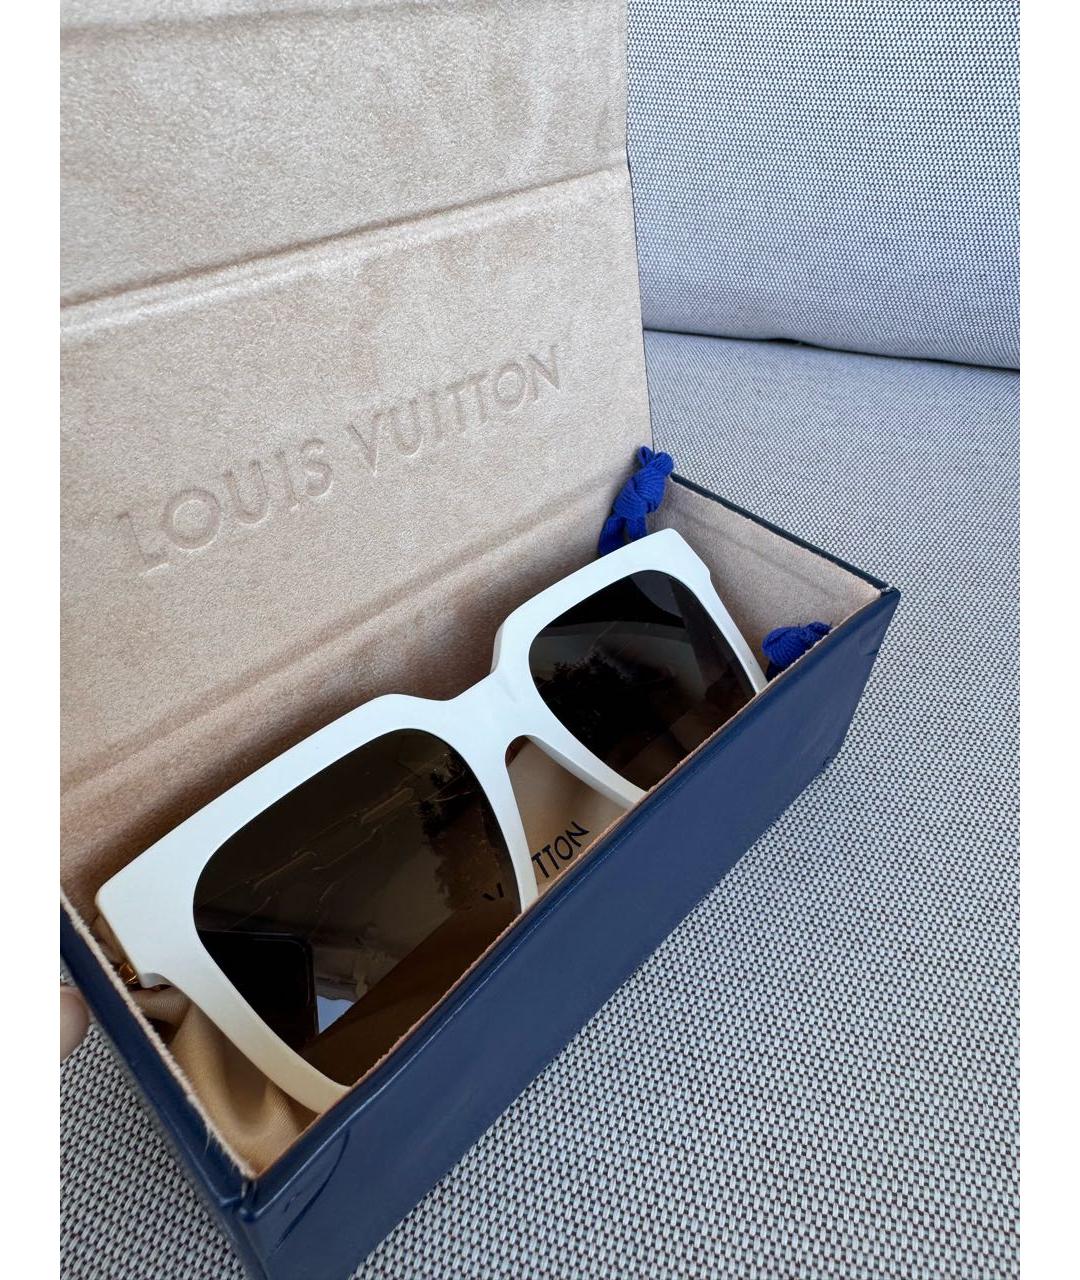 LOUIS VUITTON PRE-OWNED Белые пластиковые солнцезащитные очки, фото 4